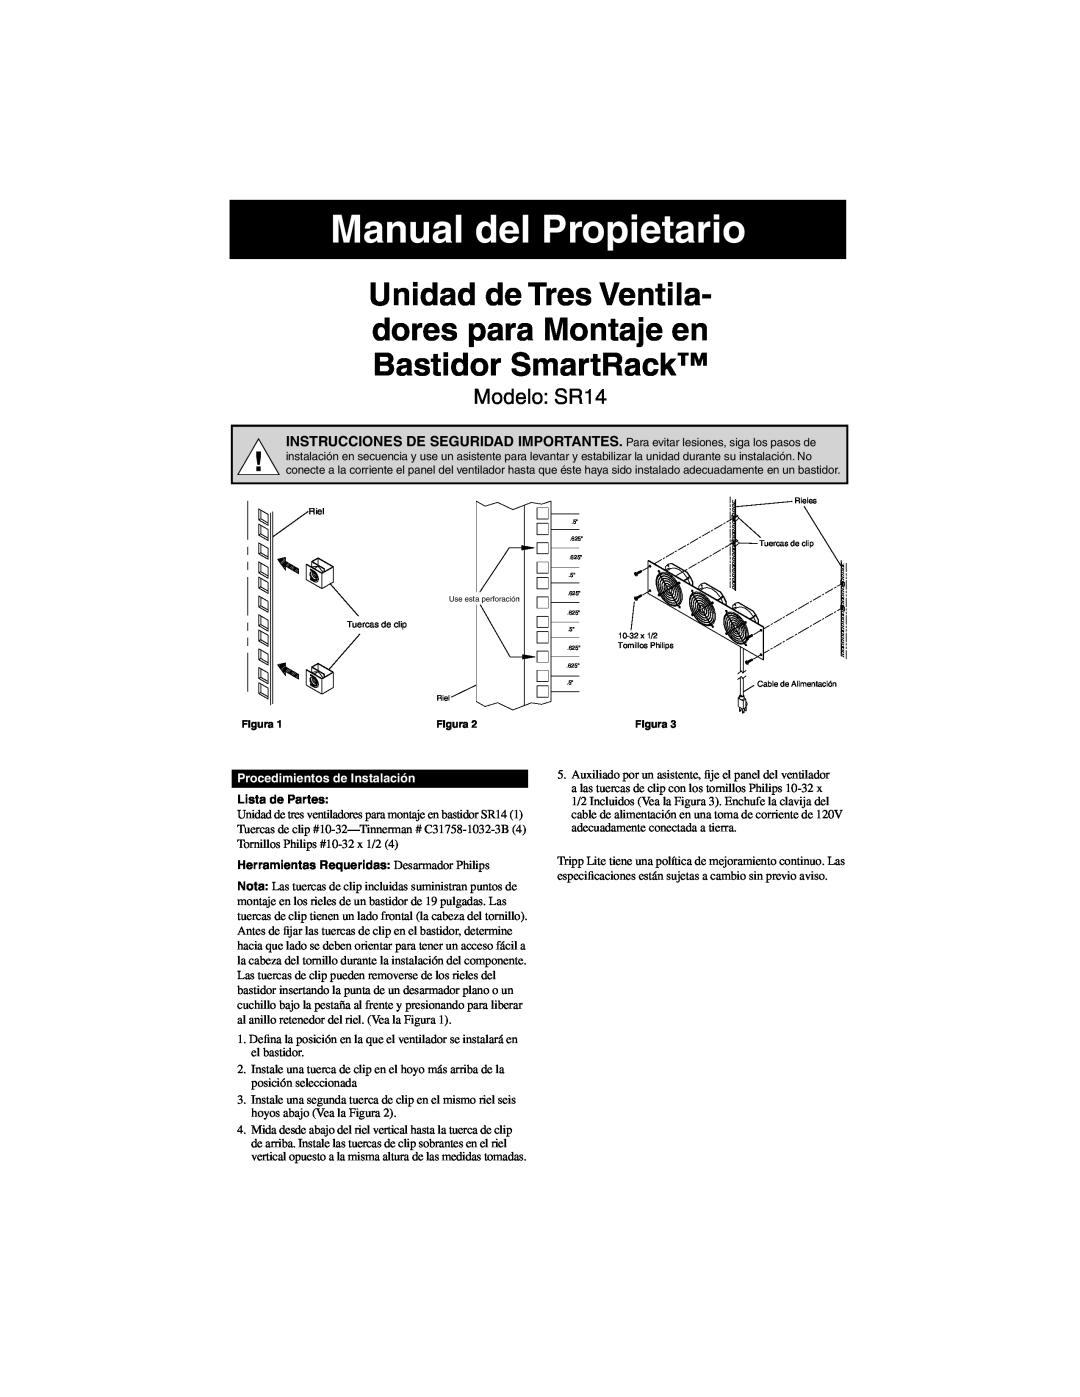 Tripp Lite warranty Manual del Propietario, Modelo SR14, Procedimientos de Instalación, Lista de Partes 